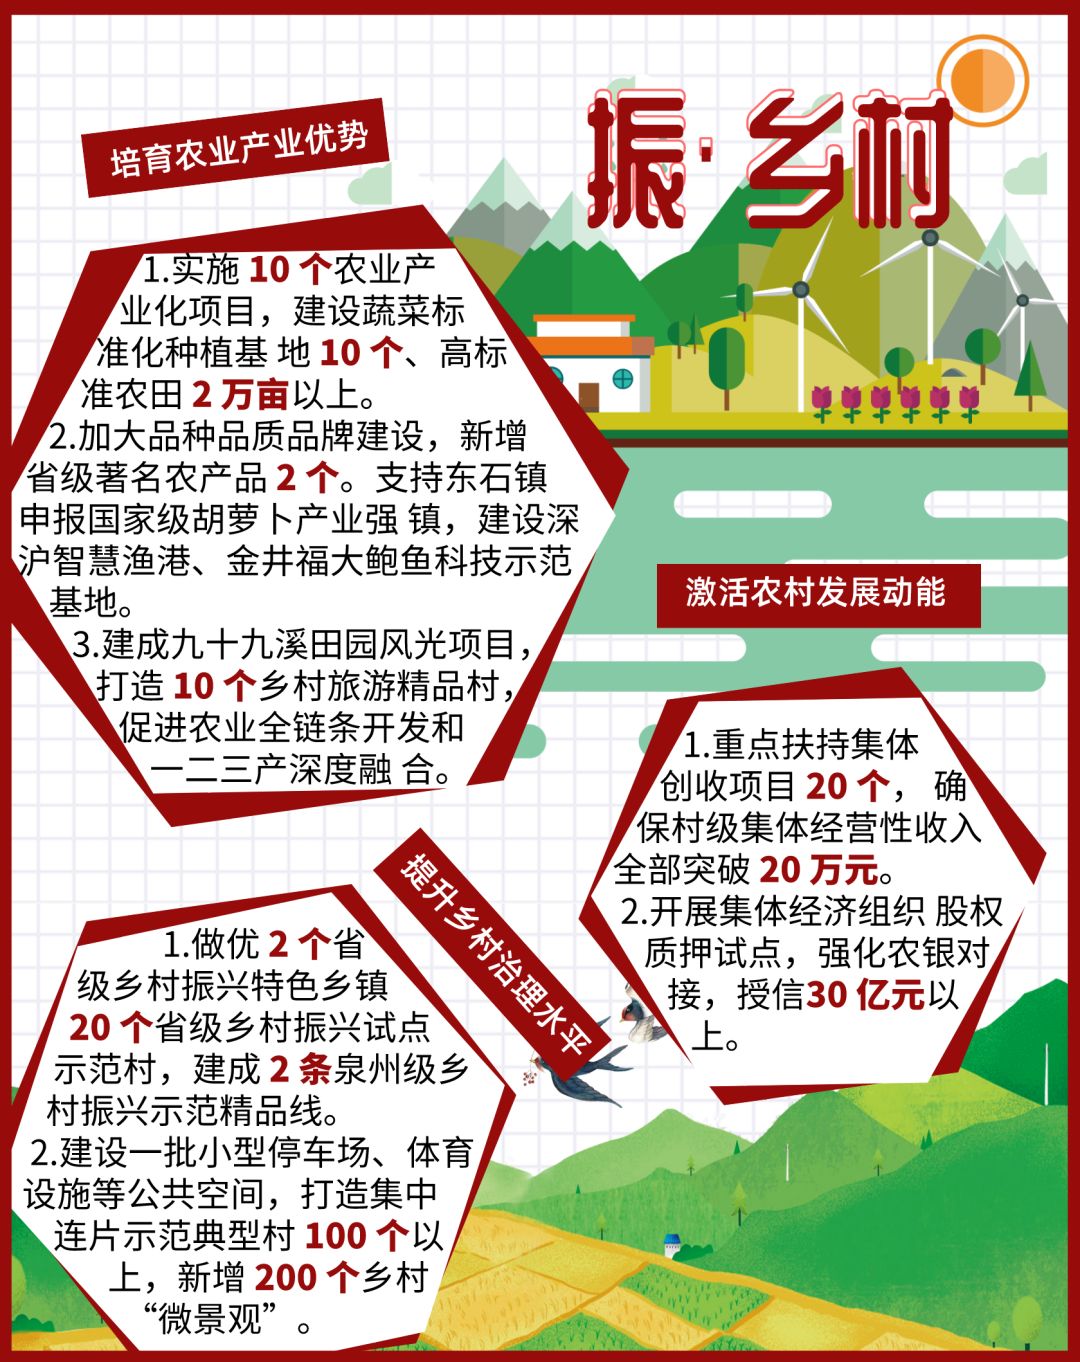 刚刚！晋江市长“官宣”七张“施工图” 涉及91亿民生支出！20个小学食堂、50个AED.....